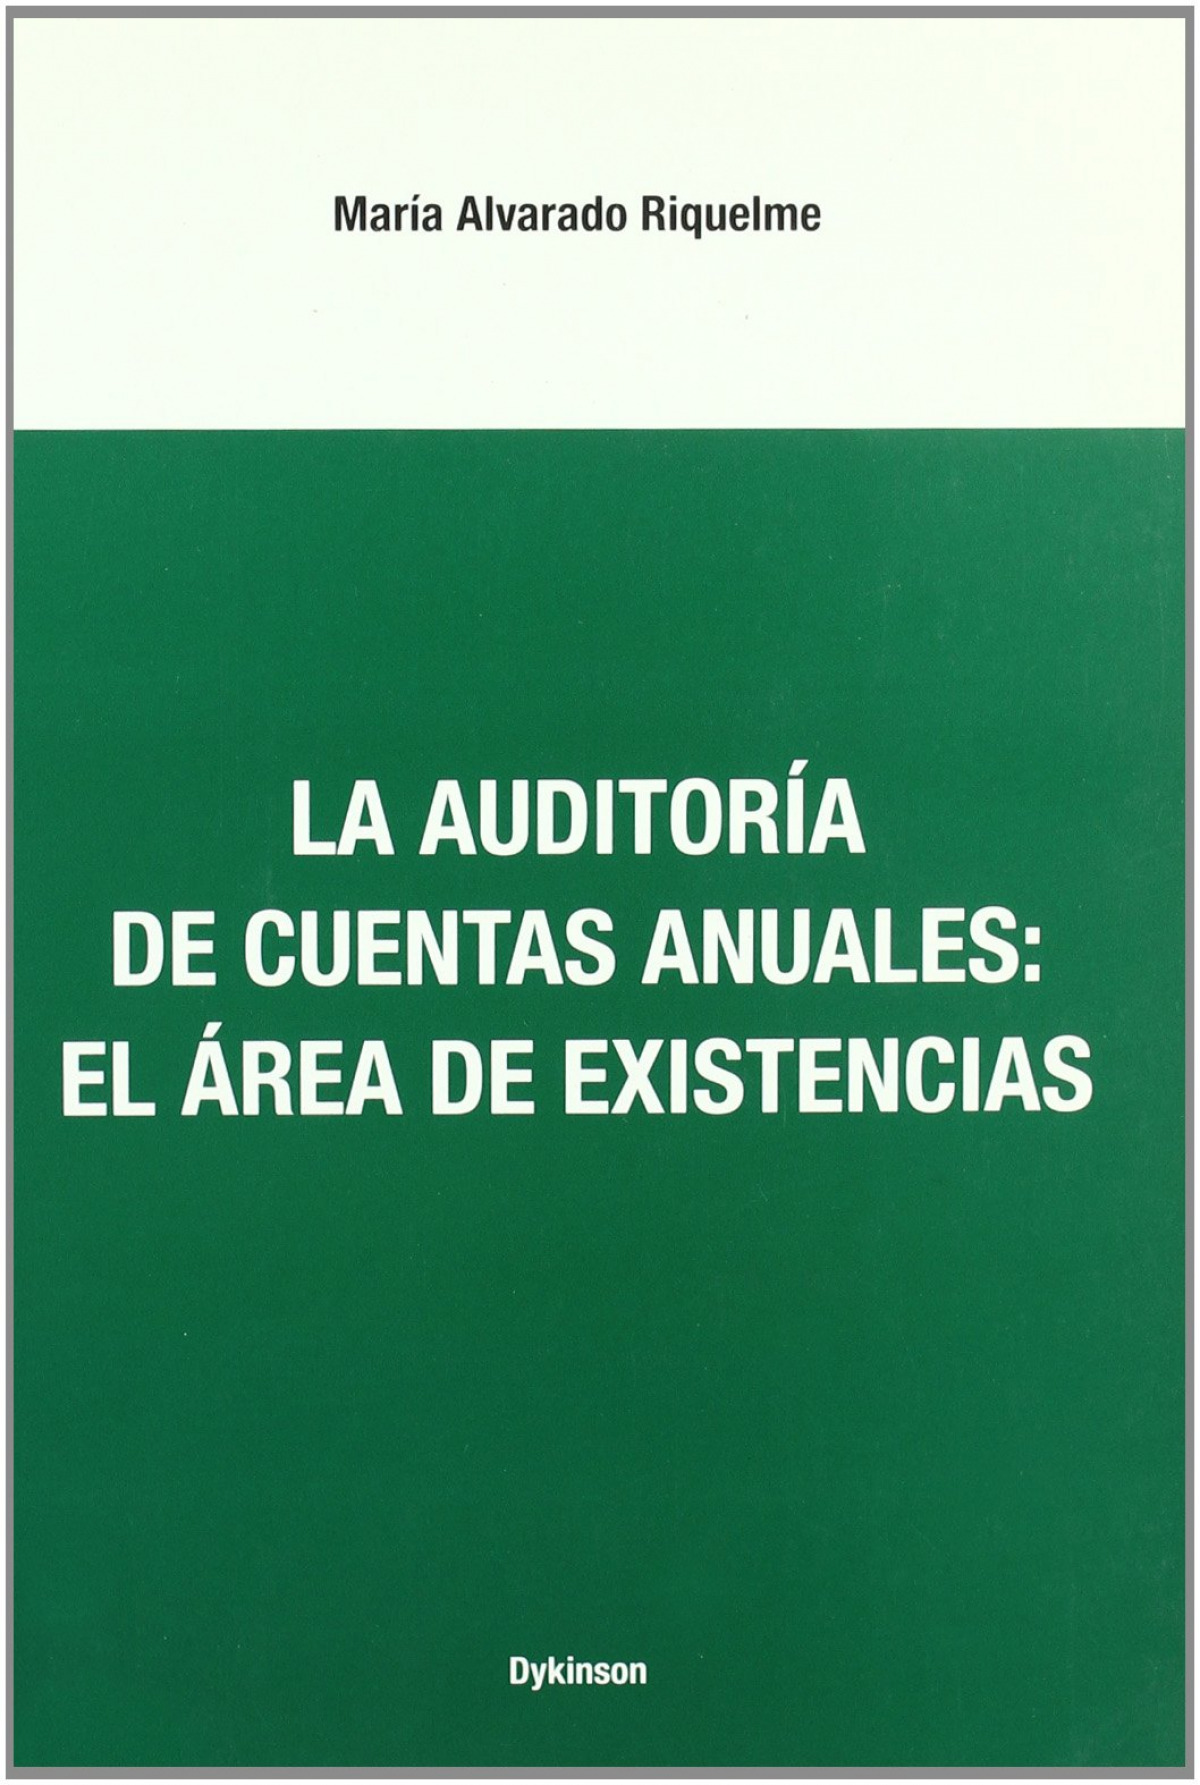 La auditoria de cuentas anuales: el area de existencias - Alvarado Riquelme, M.